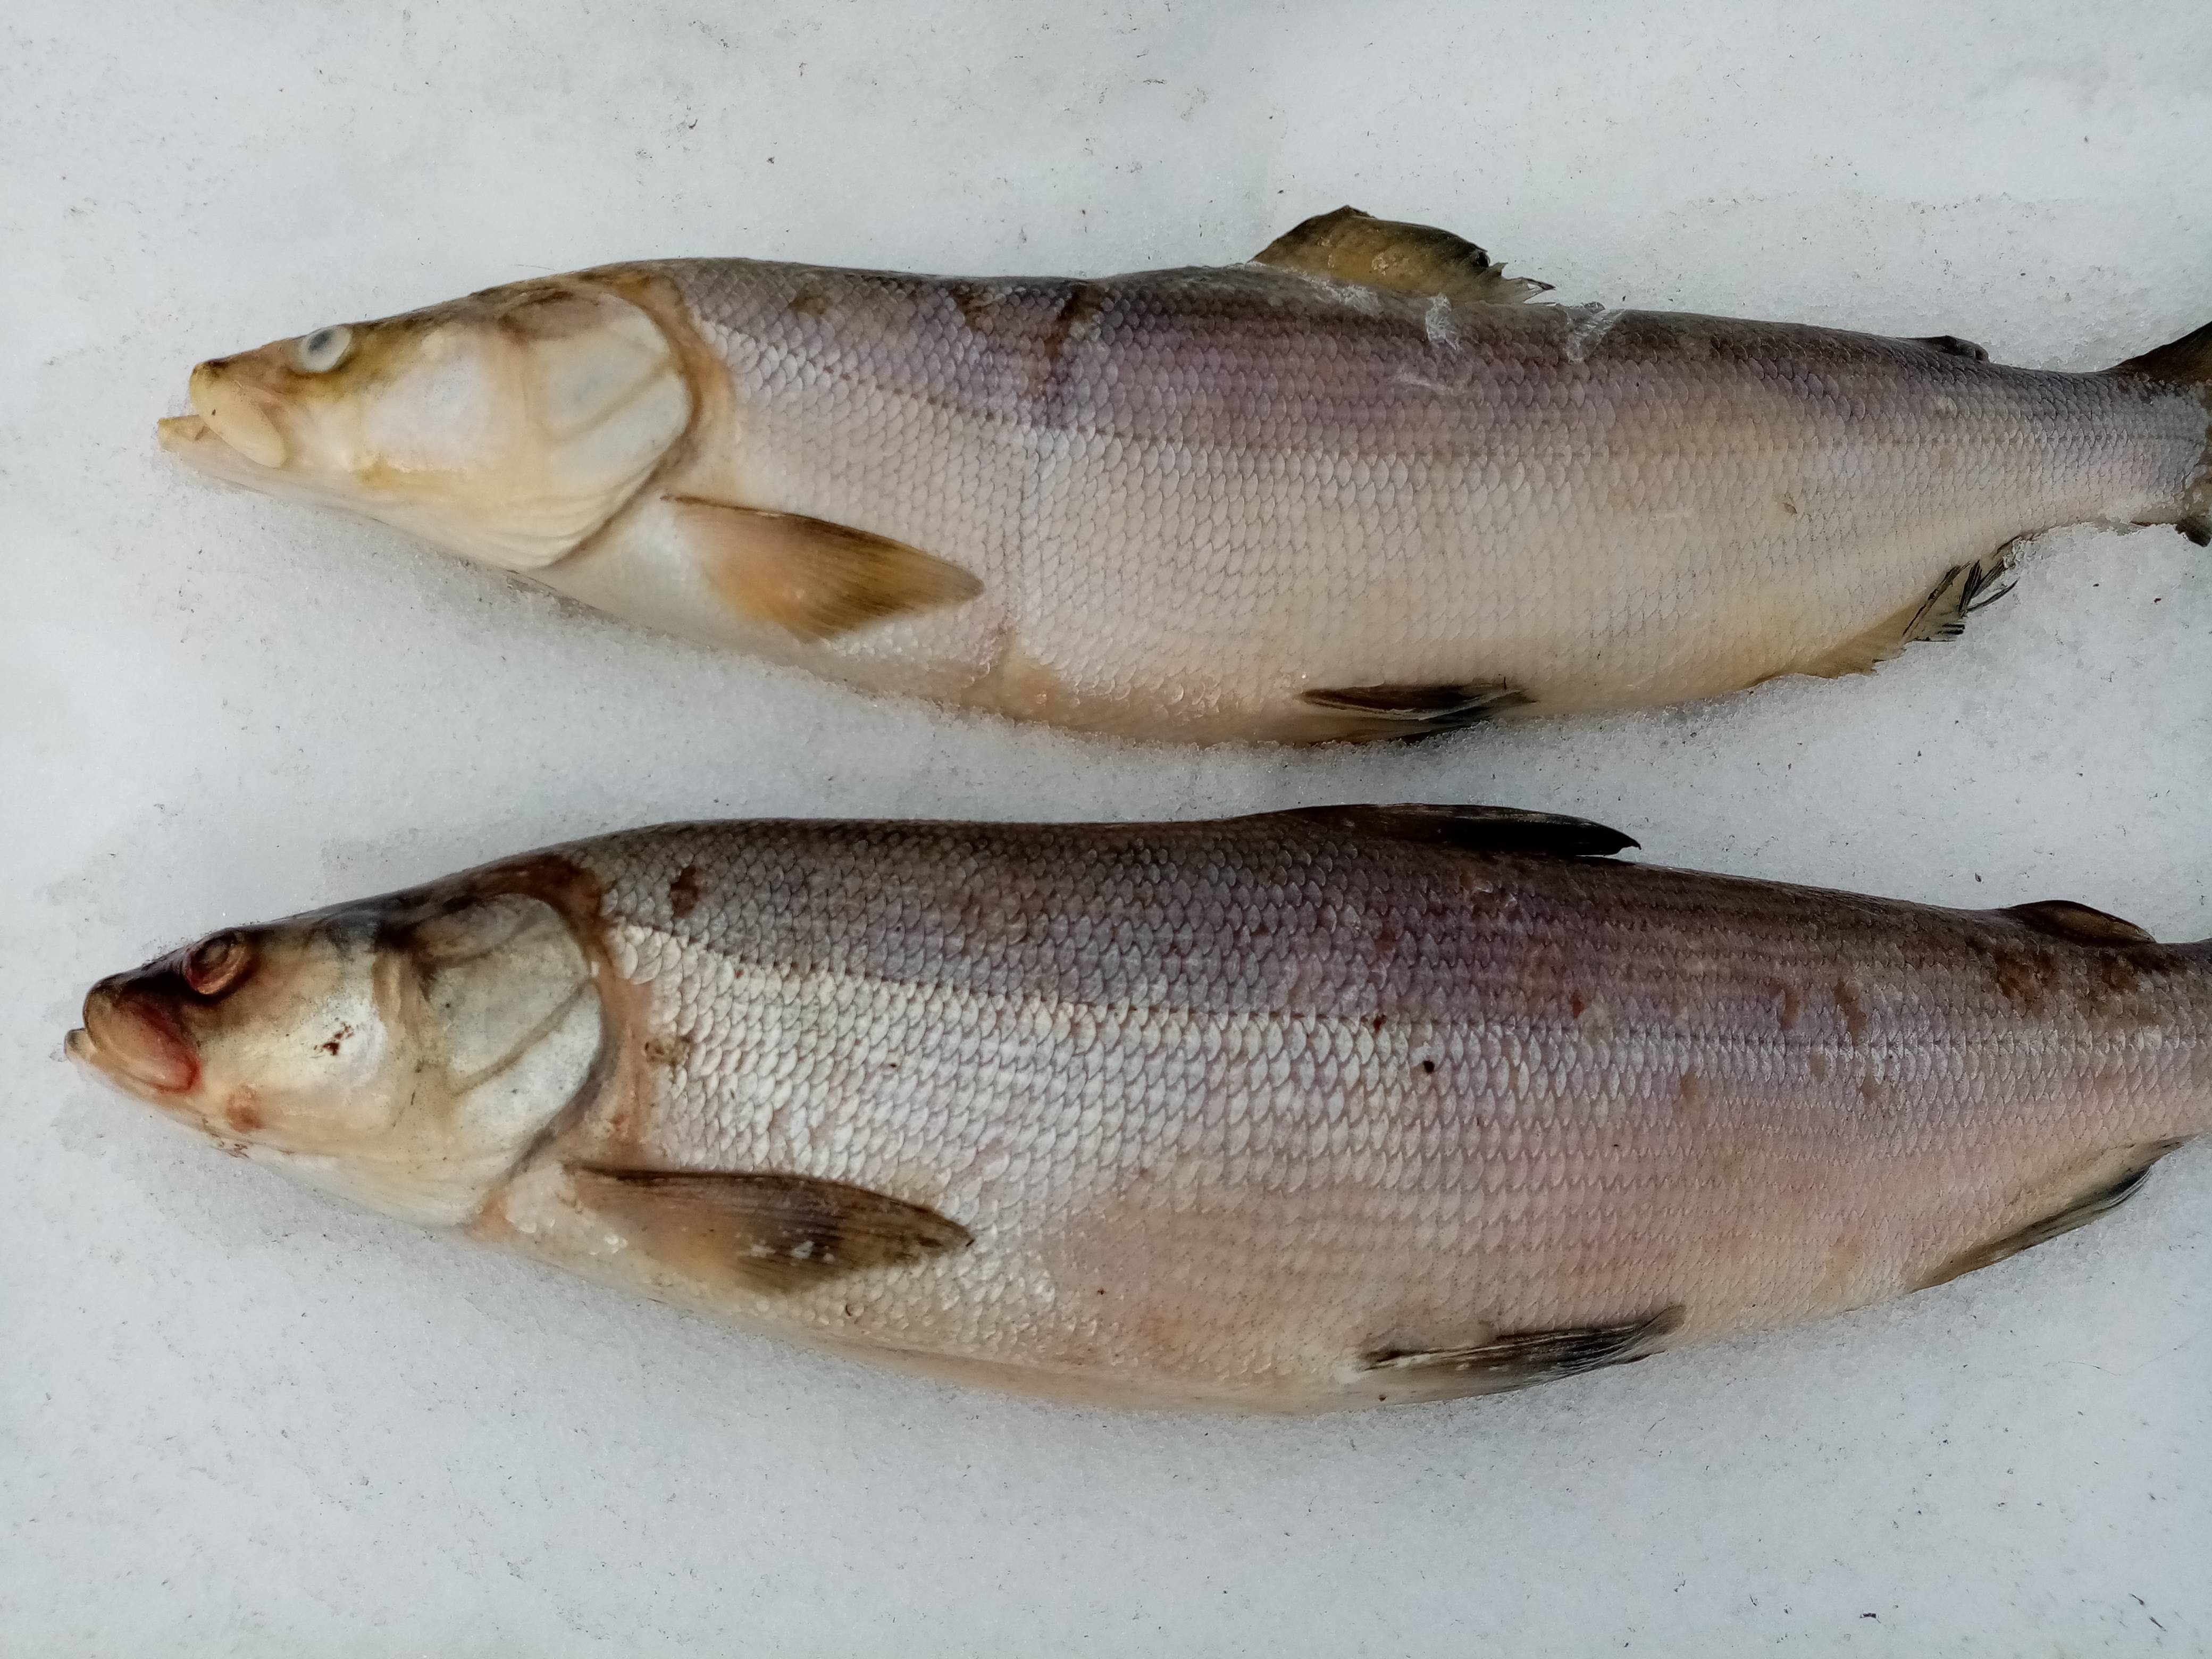 Нельма рыба. описание, особенности, образ жизни и среда обитания рыбы нельмы